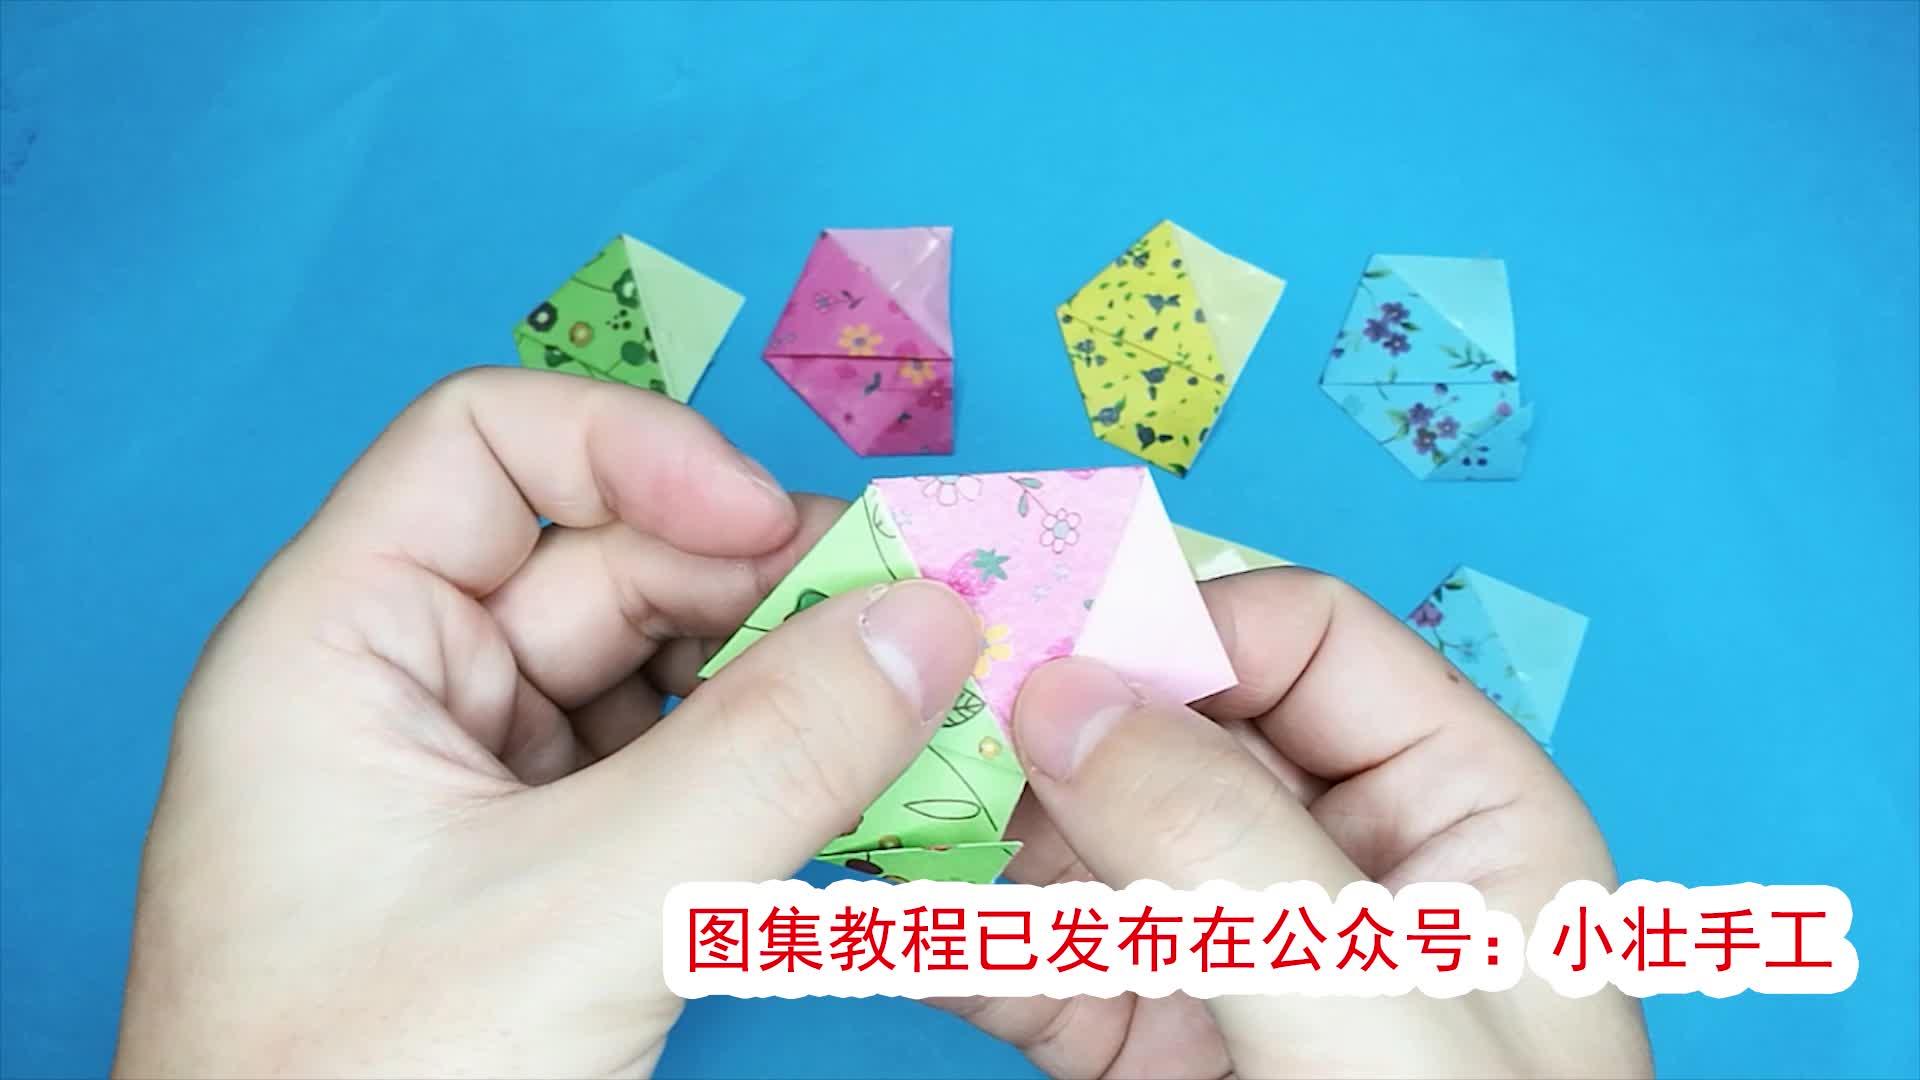 教你用彩纸折叠超级大棒棒糖 儿童学习折纸（狗折纸教程） - 有点网 - 好手艺